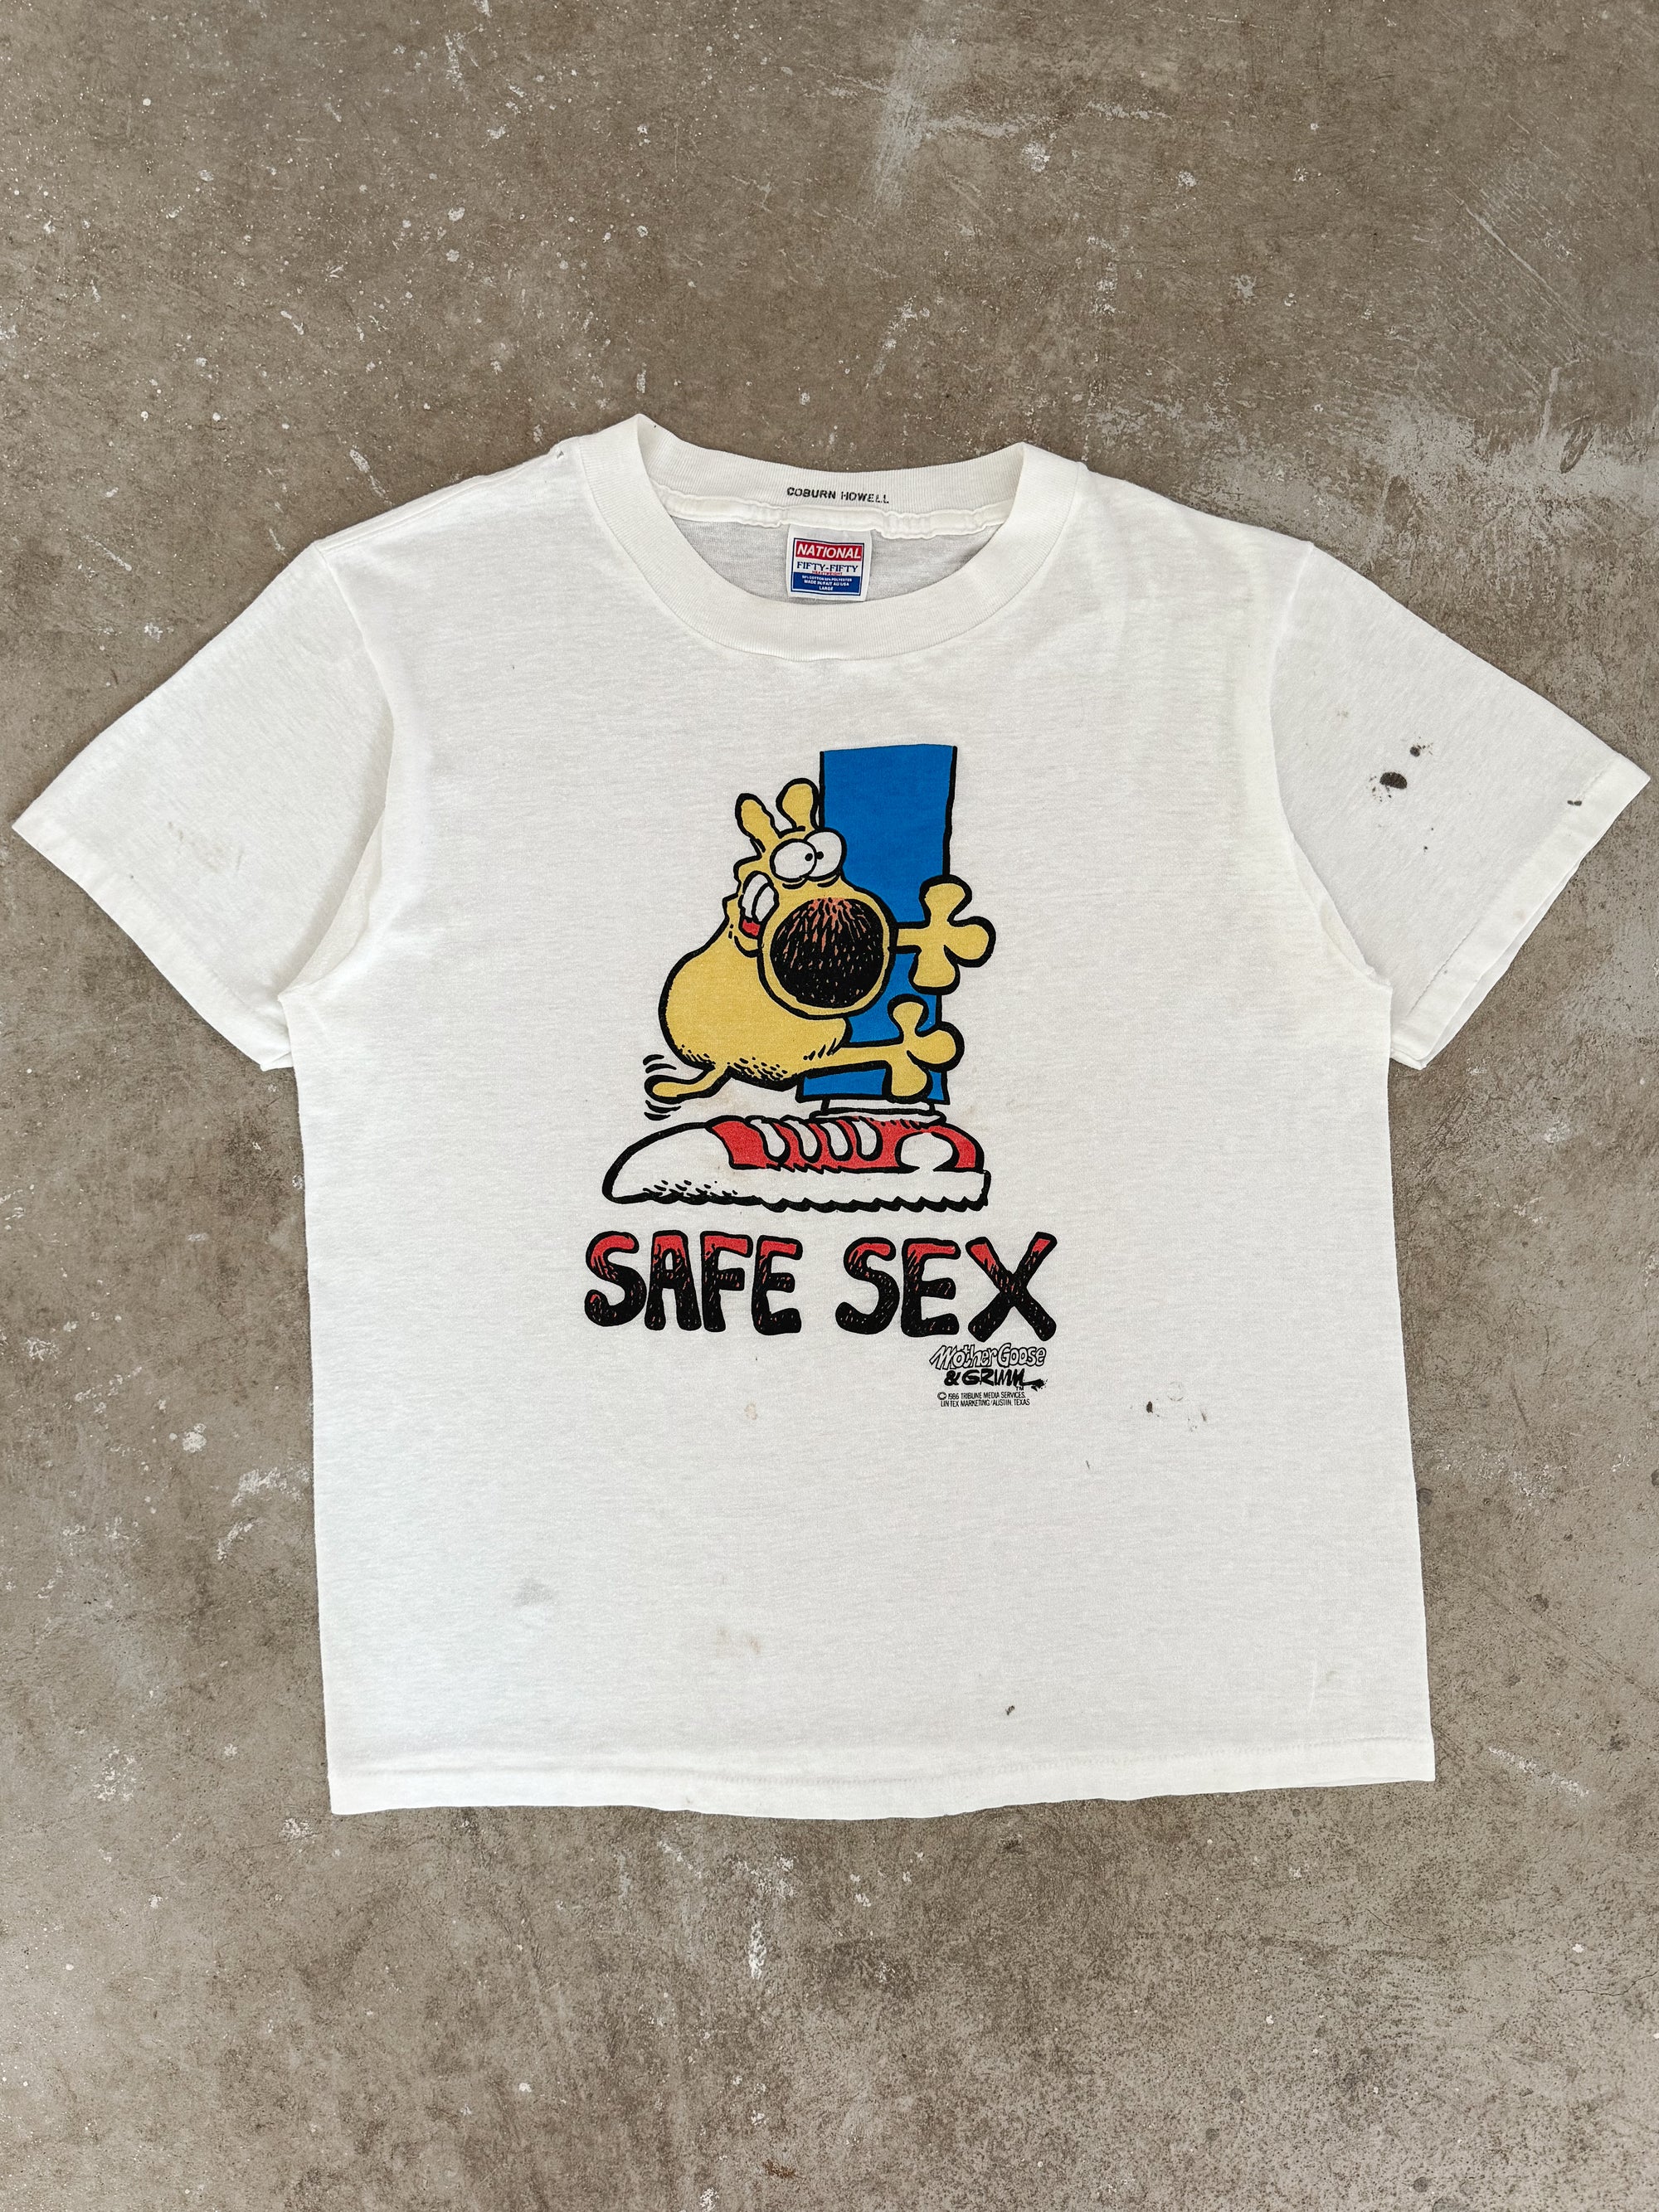 1980s "Safe Sex" Tee (M)